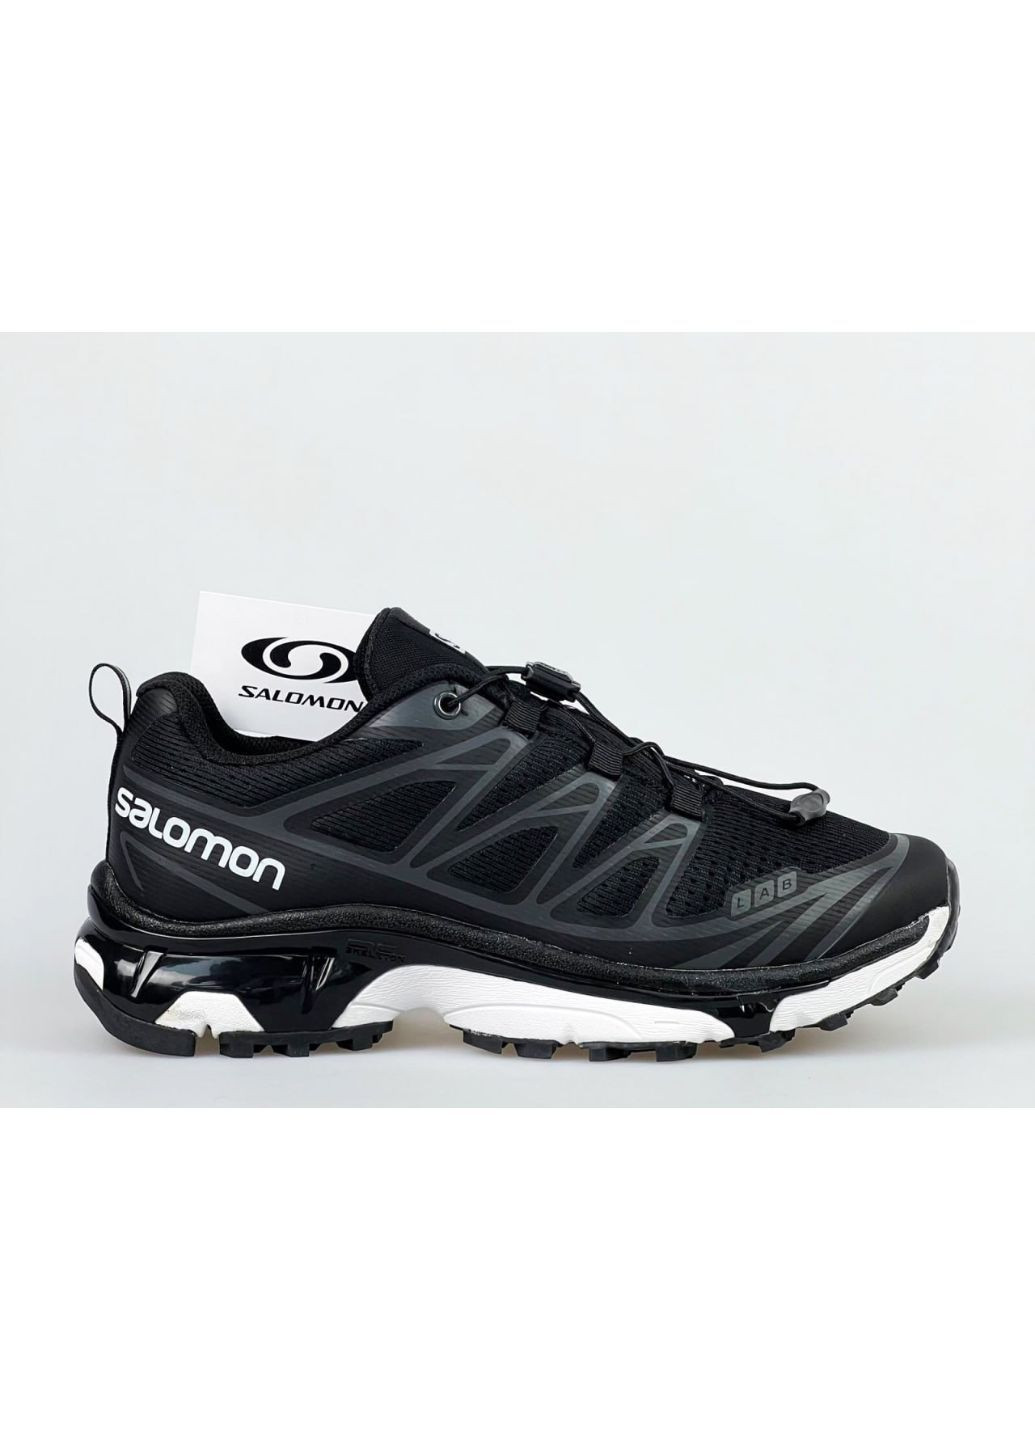 Черно-белые демисезонные мужские кроссовки черные с белым "no name" Salomon xt6